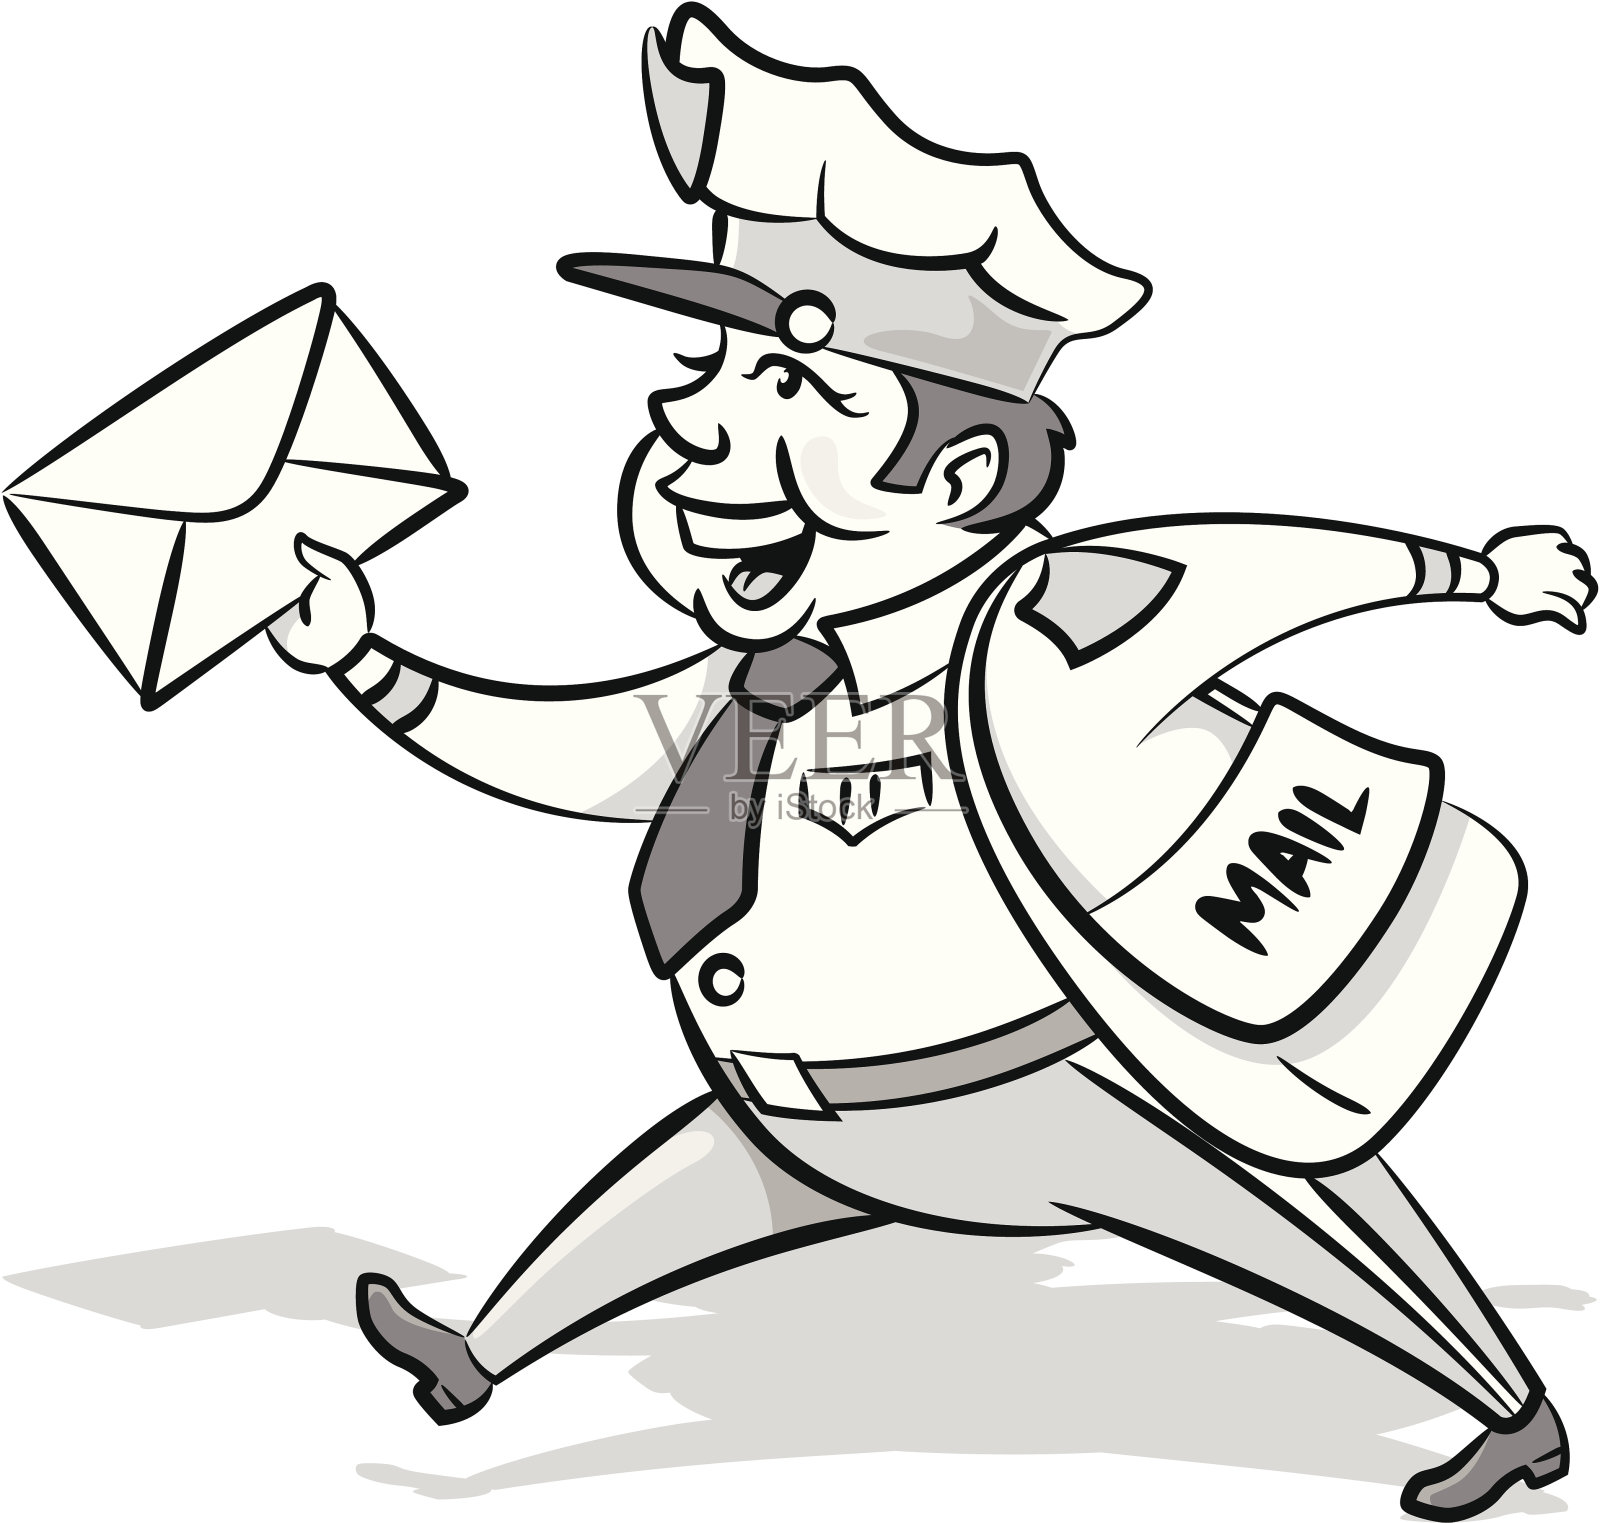 穿着制服给商人送信的年轻邮差 库存照片. 图片 包括有 快速, 发运, 邮递员, 职业, 信函, 命令 - 225548618